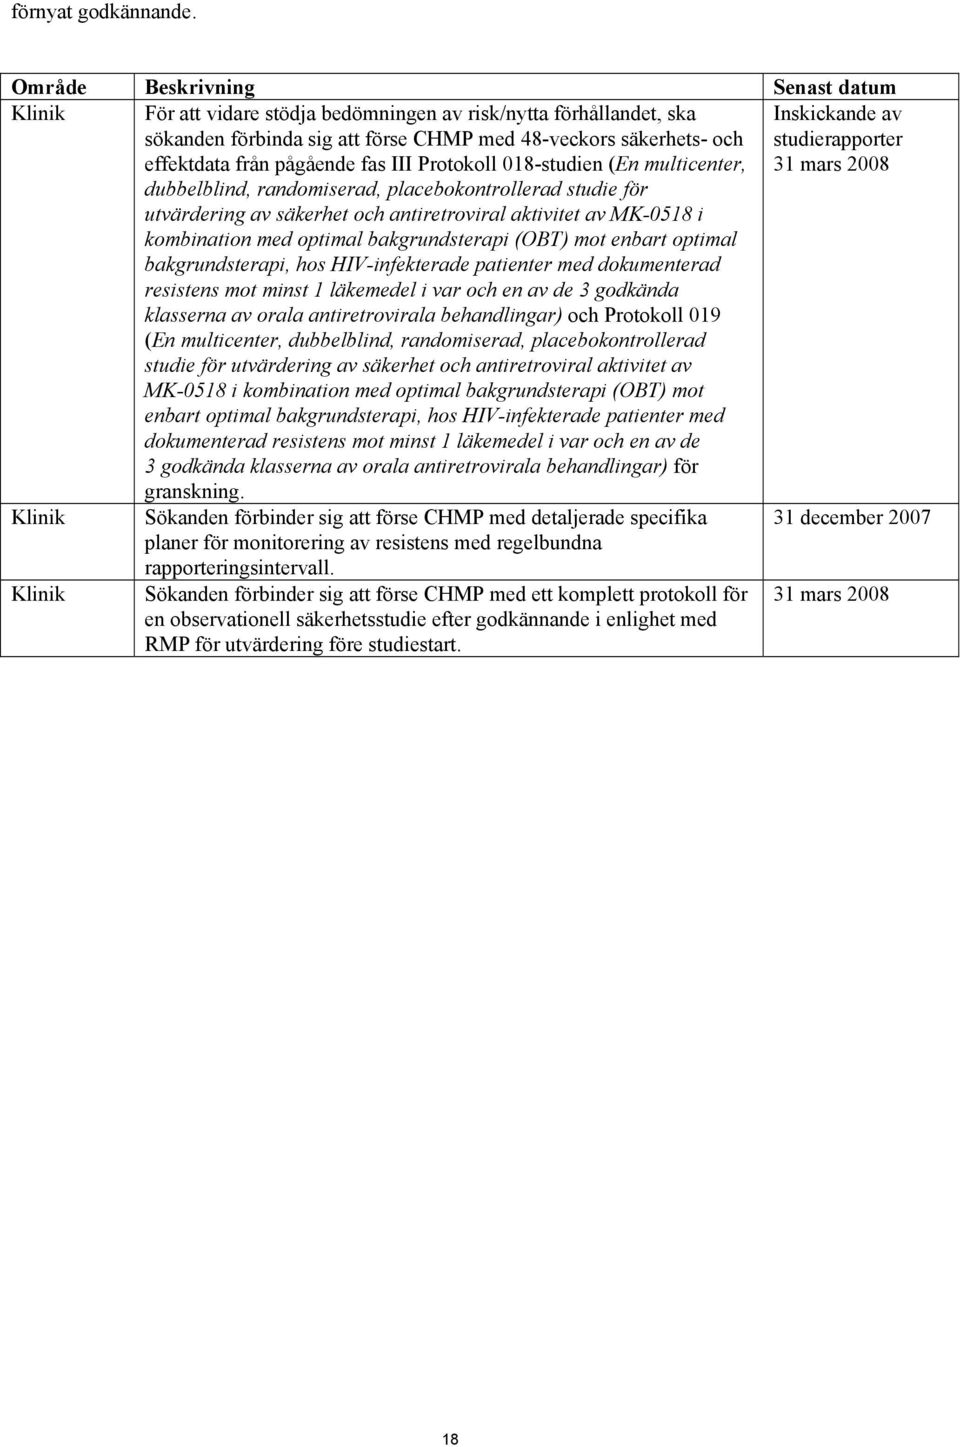 fas III Protokoll 018-studien (En multicenter, Inskickande av studierapporter 31 mars 2008 dubbelblind, randomiserad, placebokontrollerad studie för utvärdering av säkerhet och antiretroviral